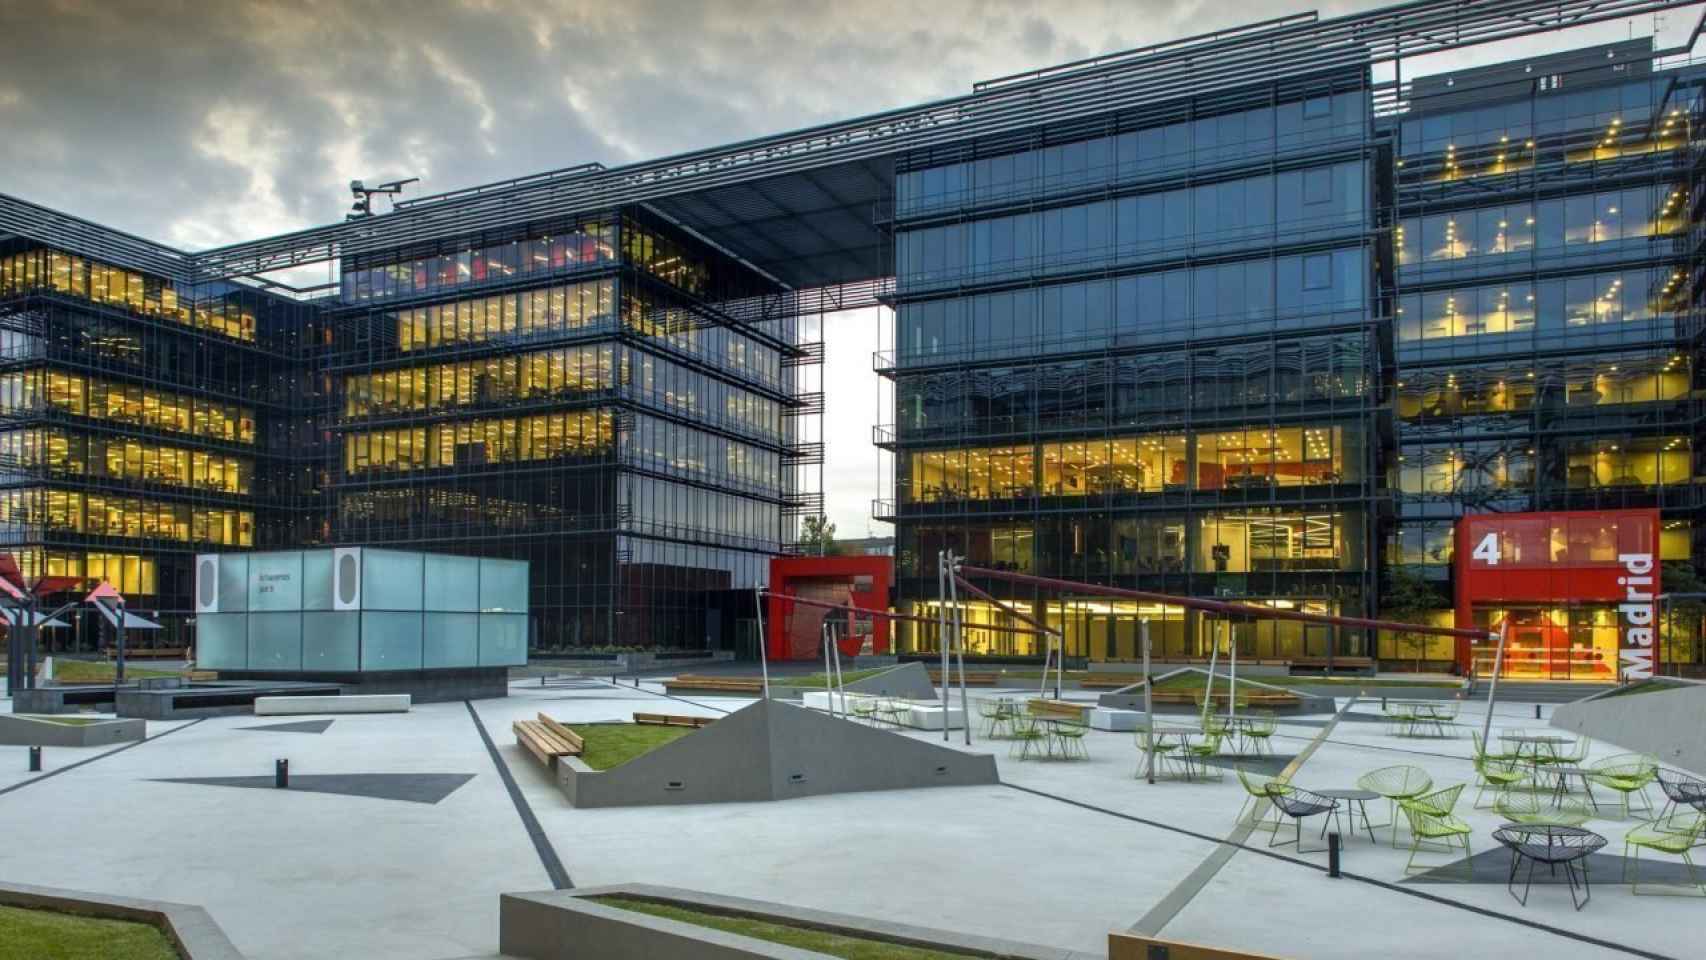 Sede central de Vodafone en Madrid.